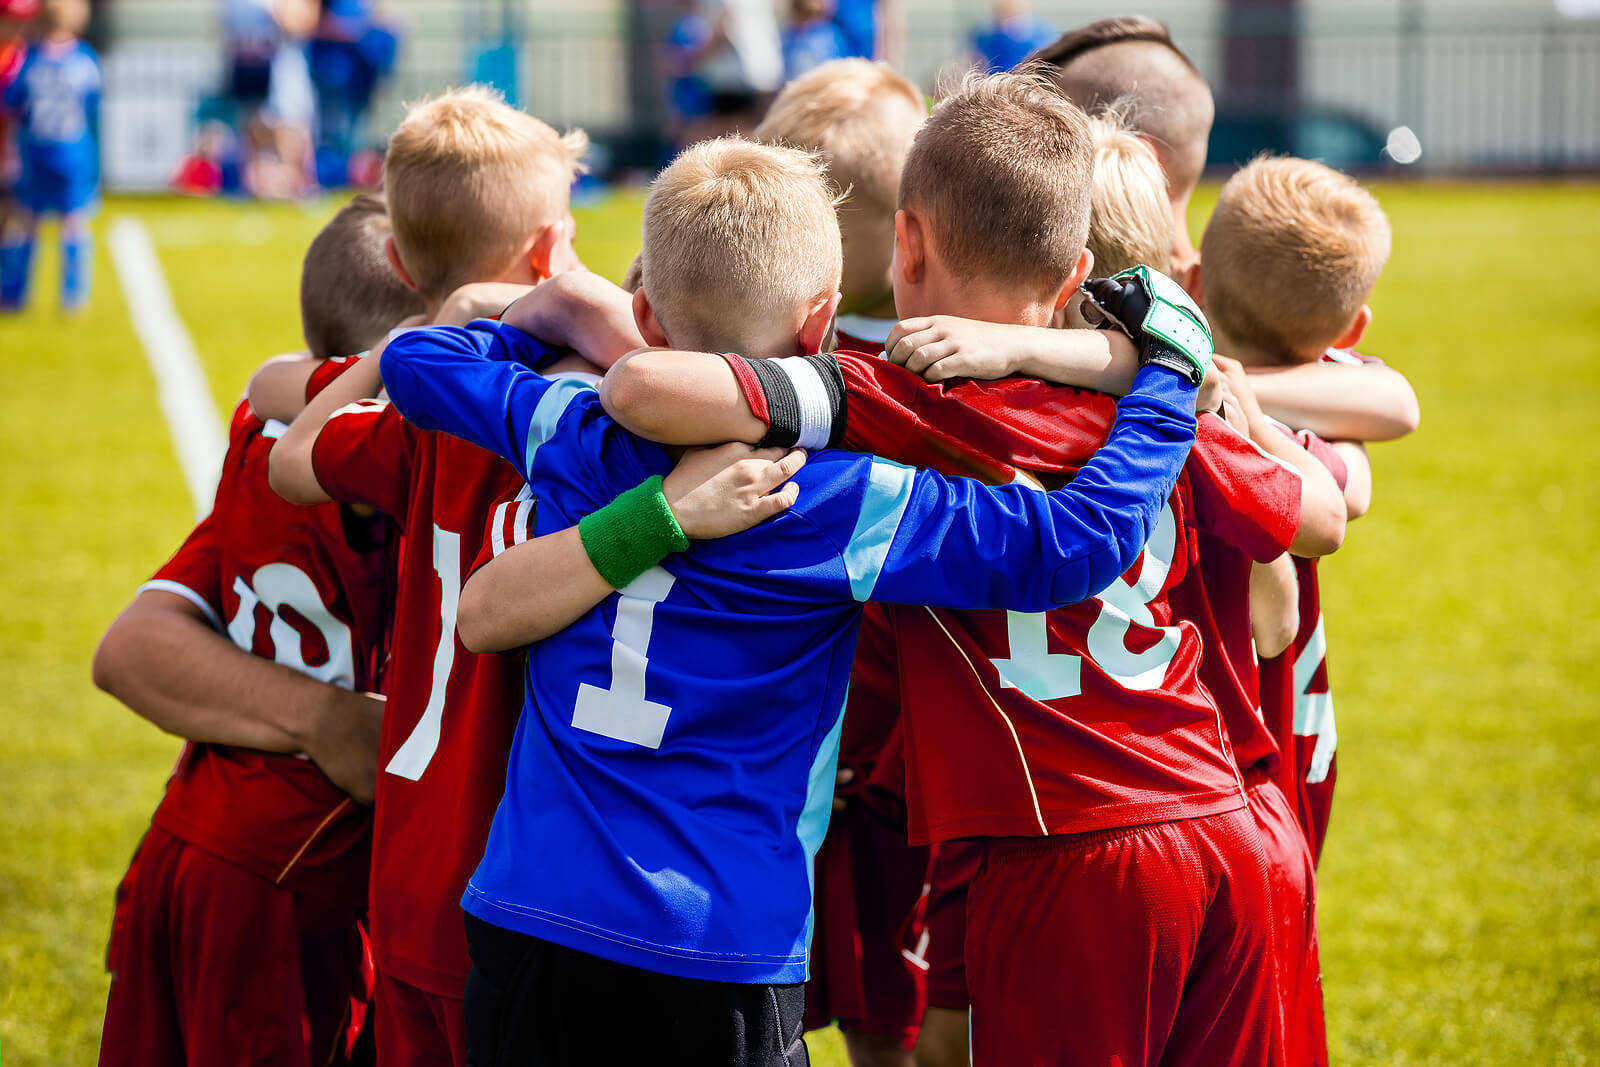 A boys soccer team in a huddle.